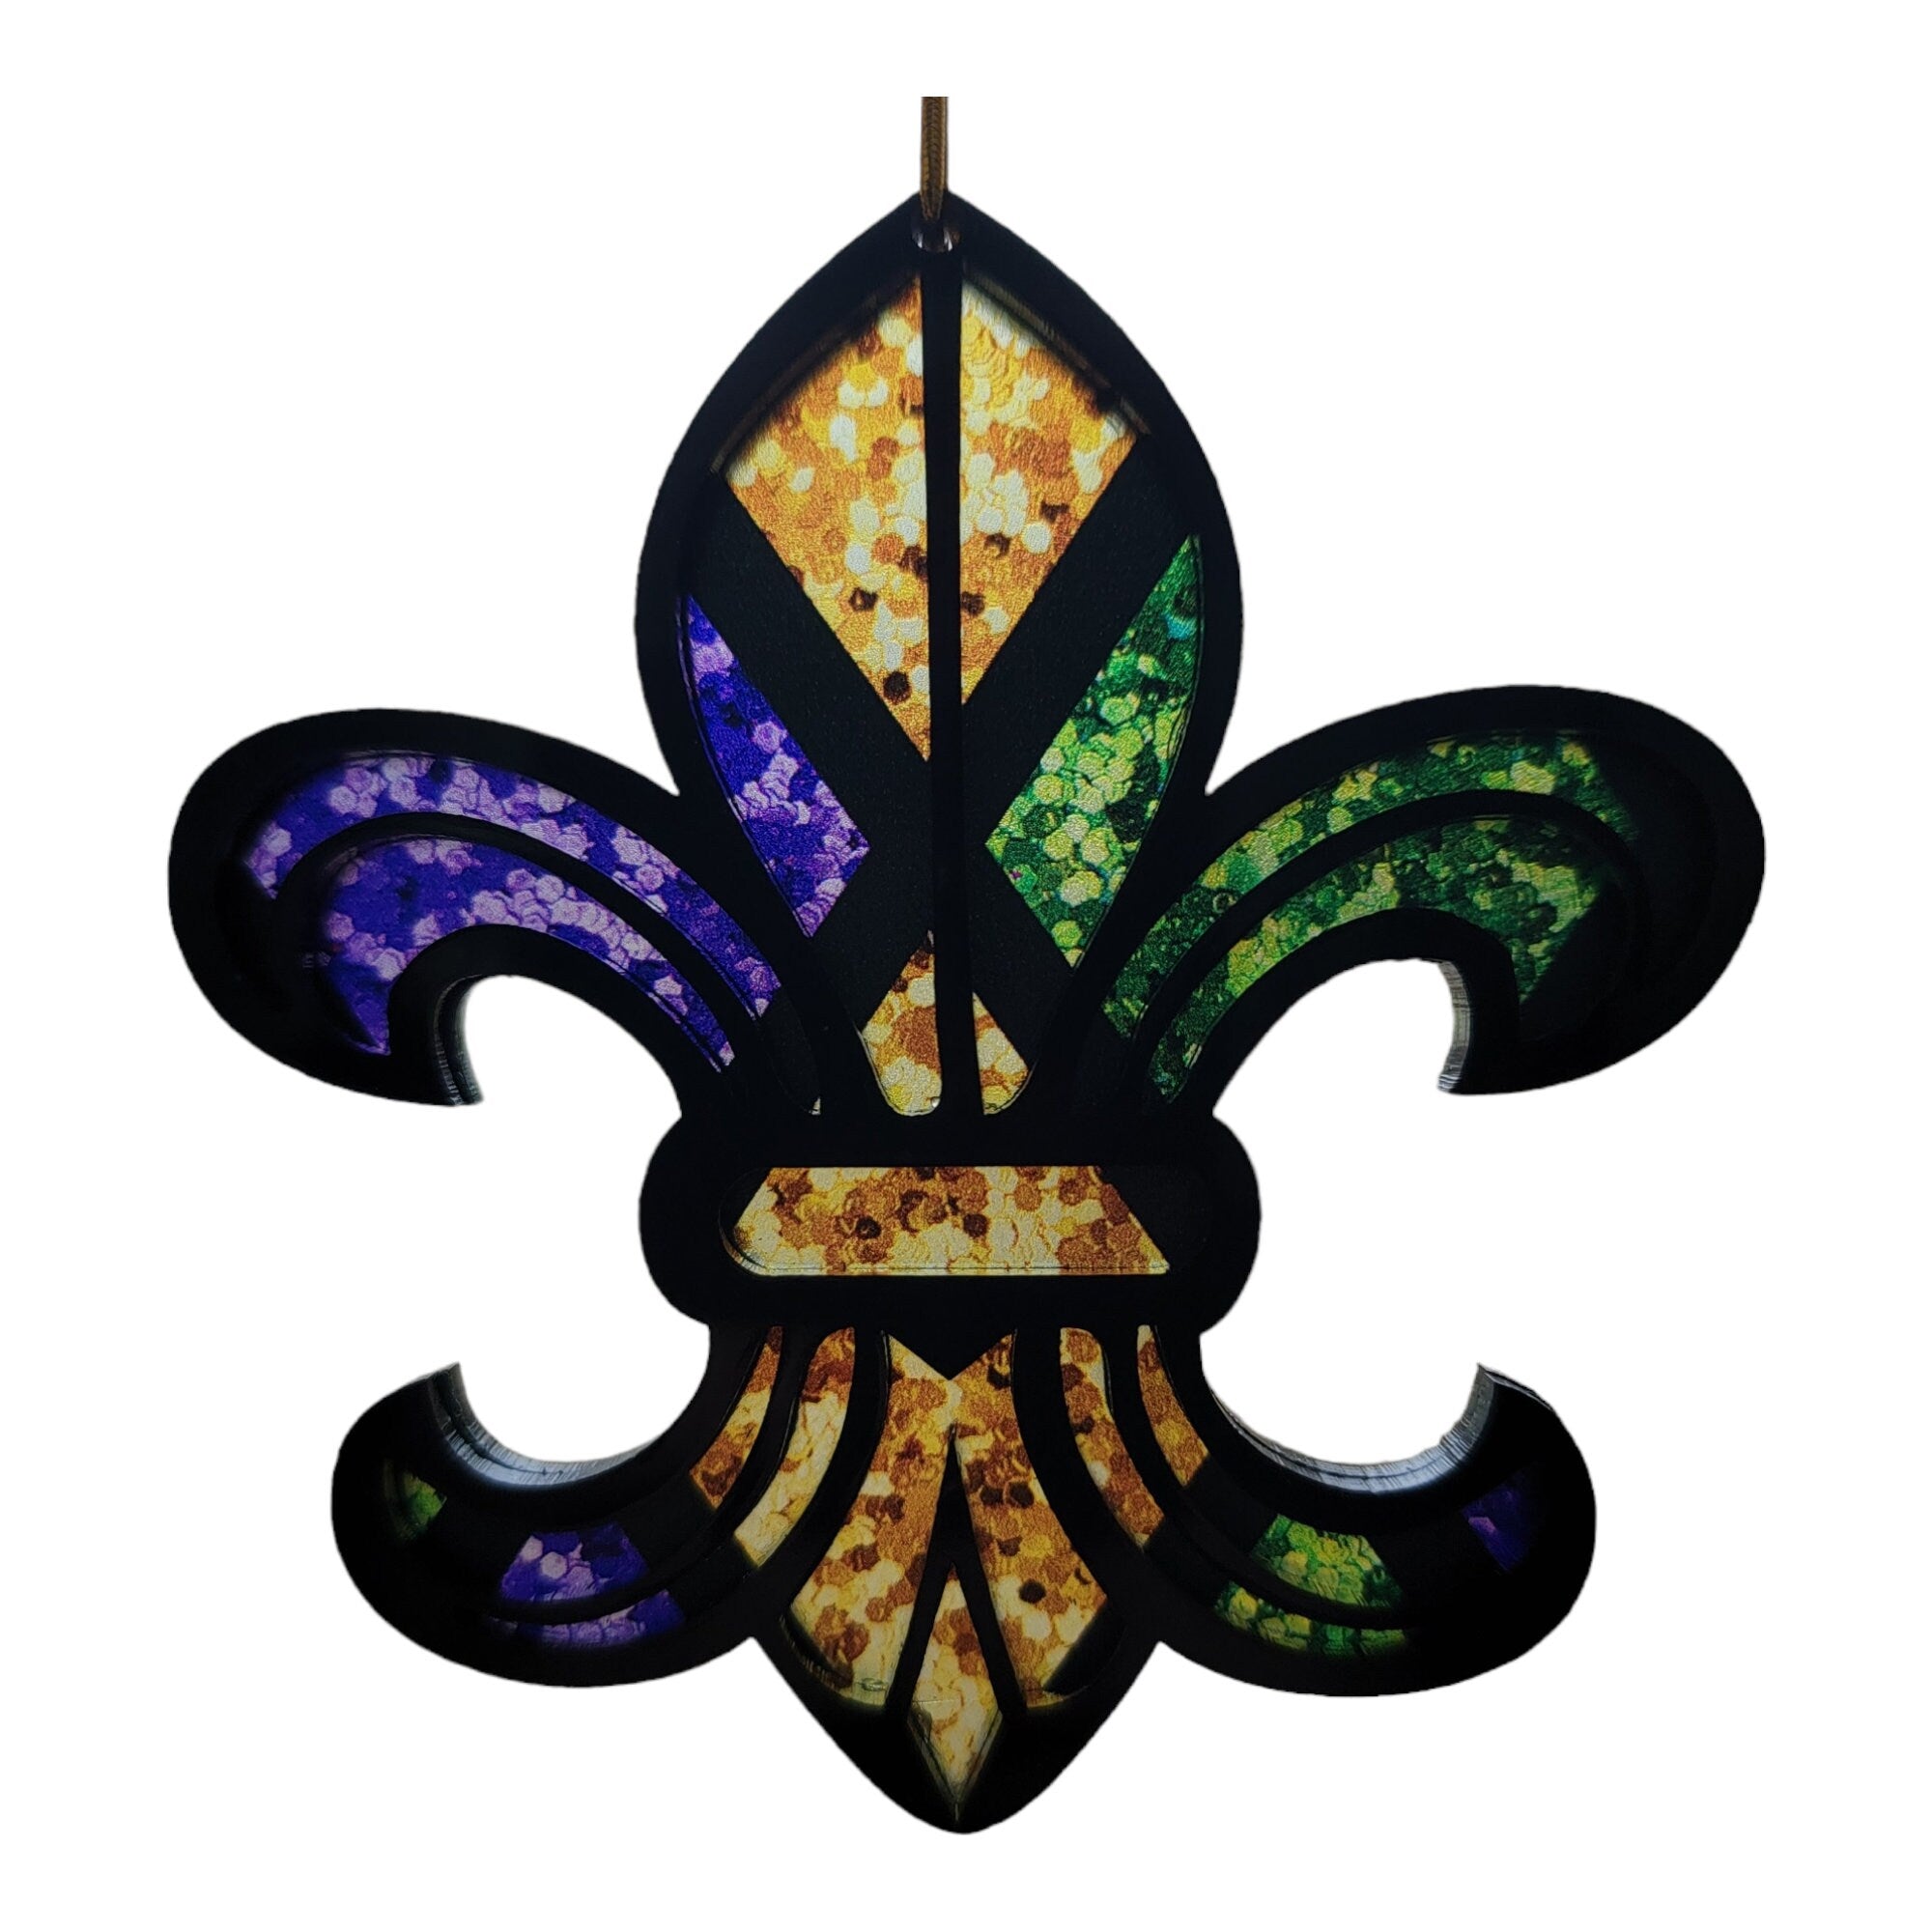 4" Fleur De Lis Ornament New Orleans Louisiana Mardi Gras Fleur De Lis Christmas